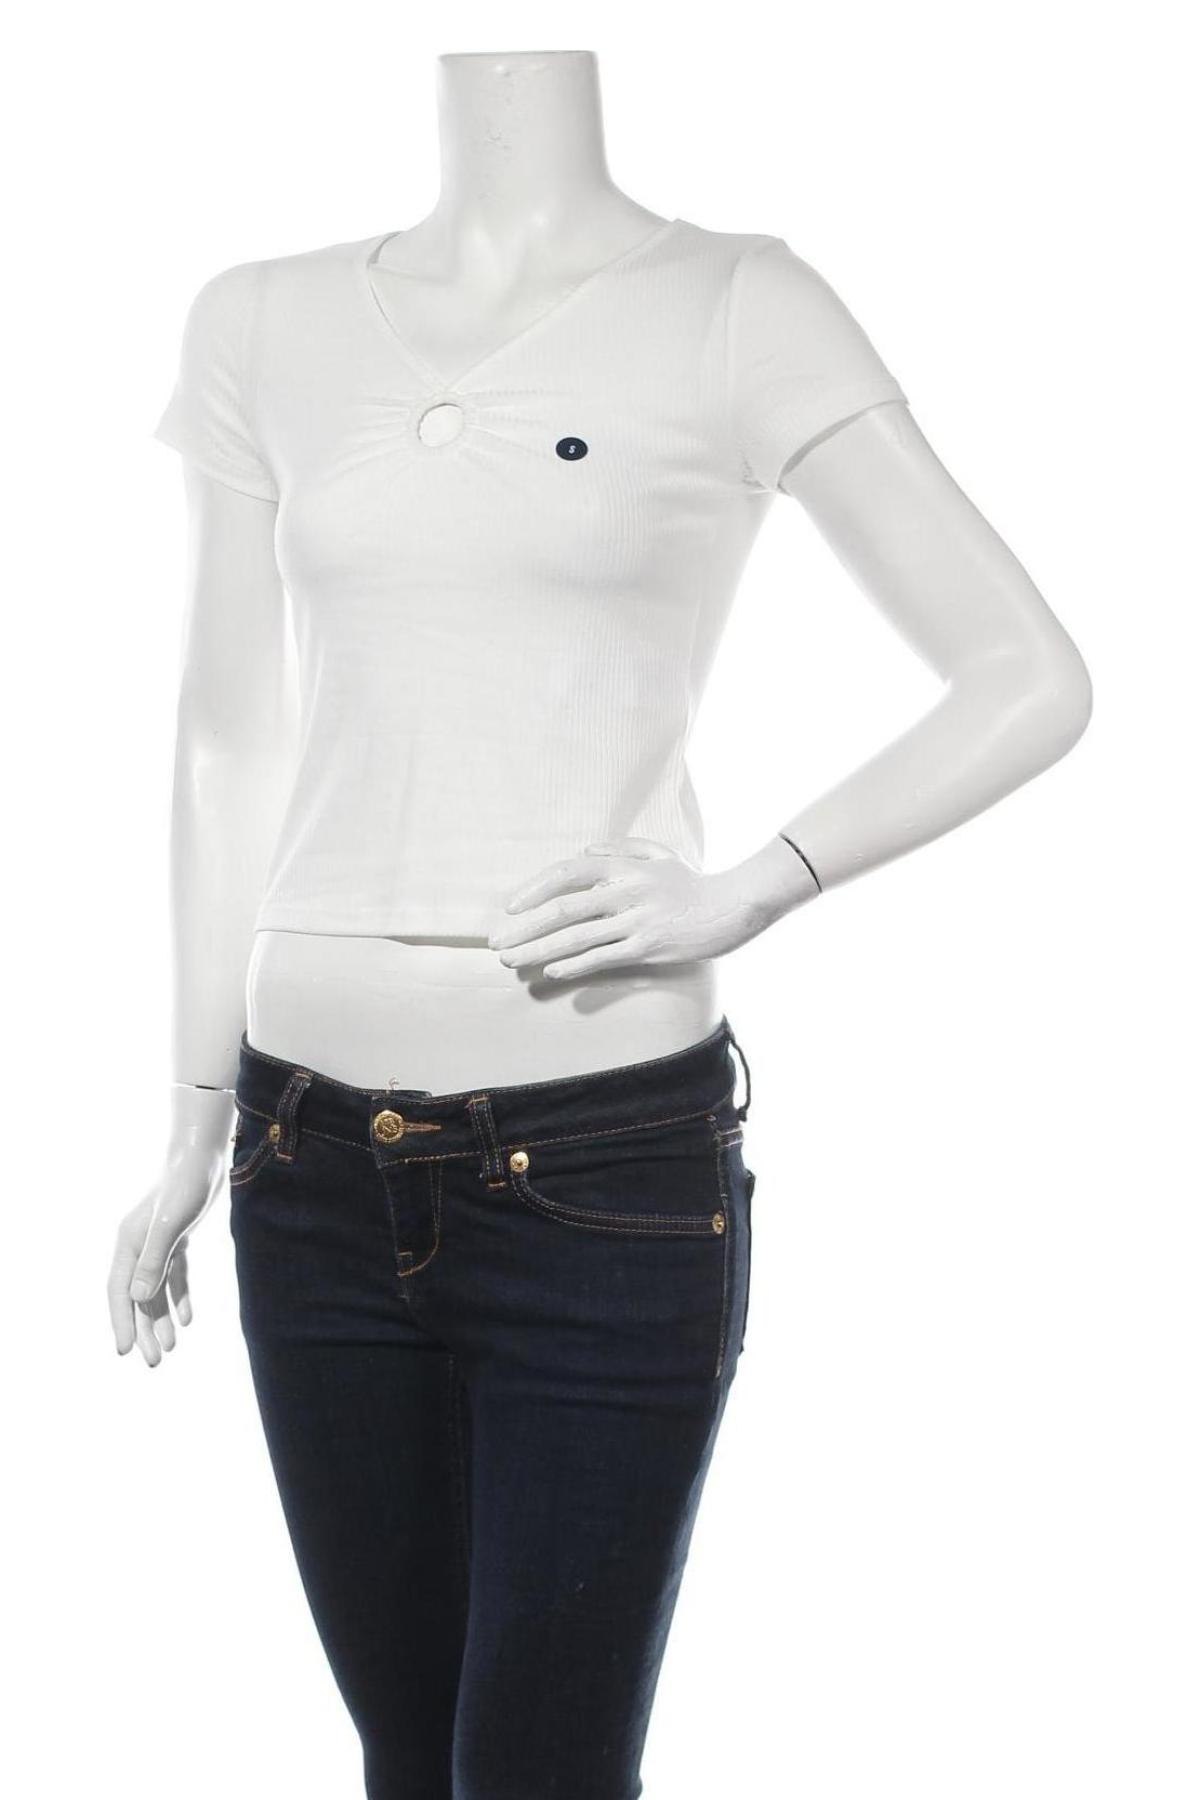 Γυναικεία μπλούζα Hollister, Μέγεθος S, Χρώμα Λευκό, 65% πολυεστέρας, 31% βισκόζη, 4% ελαστάνη, Τιμή 6,50 €